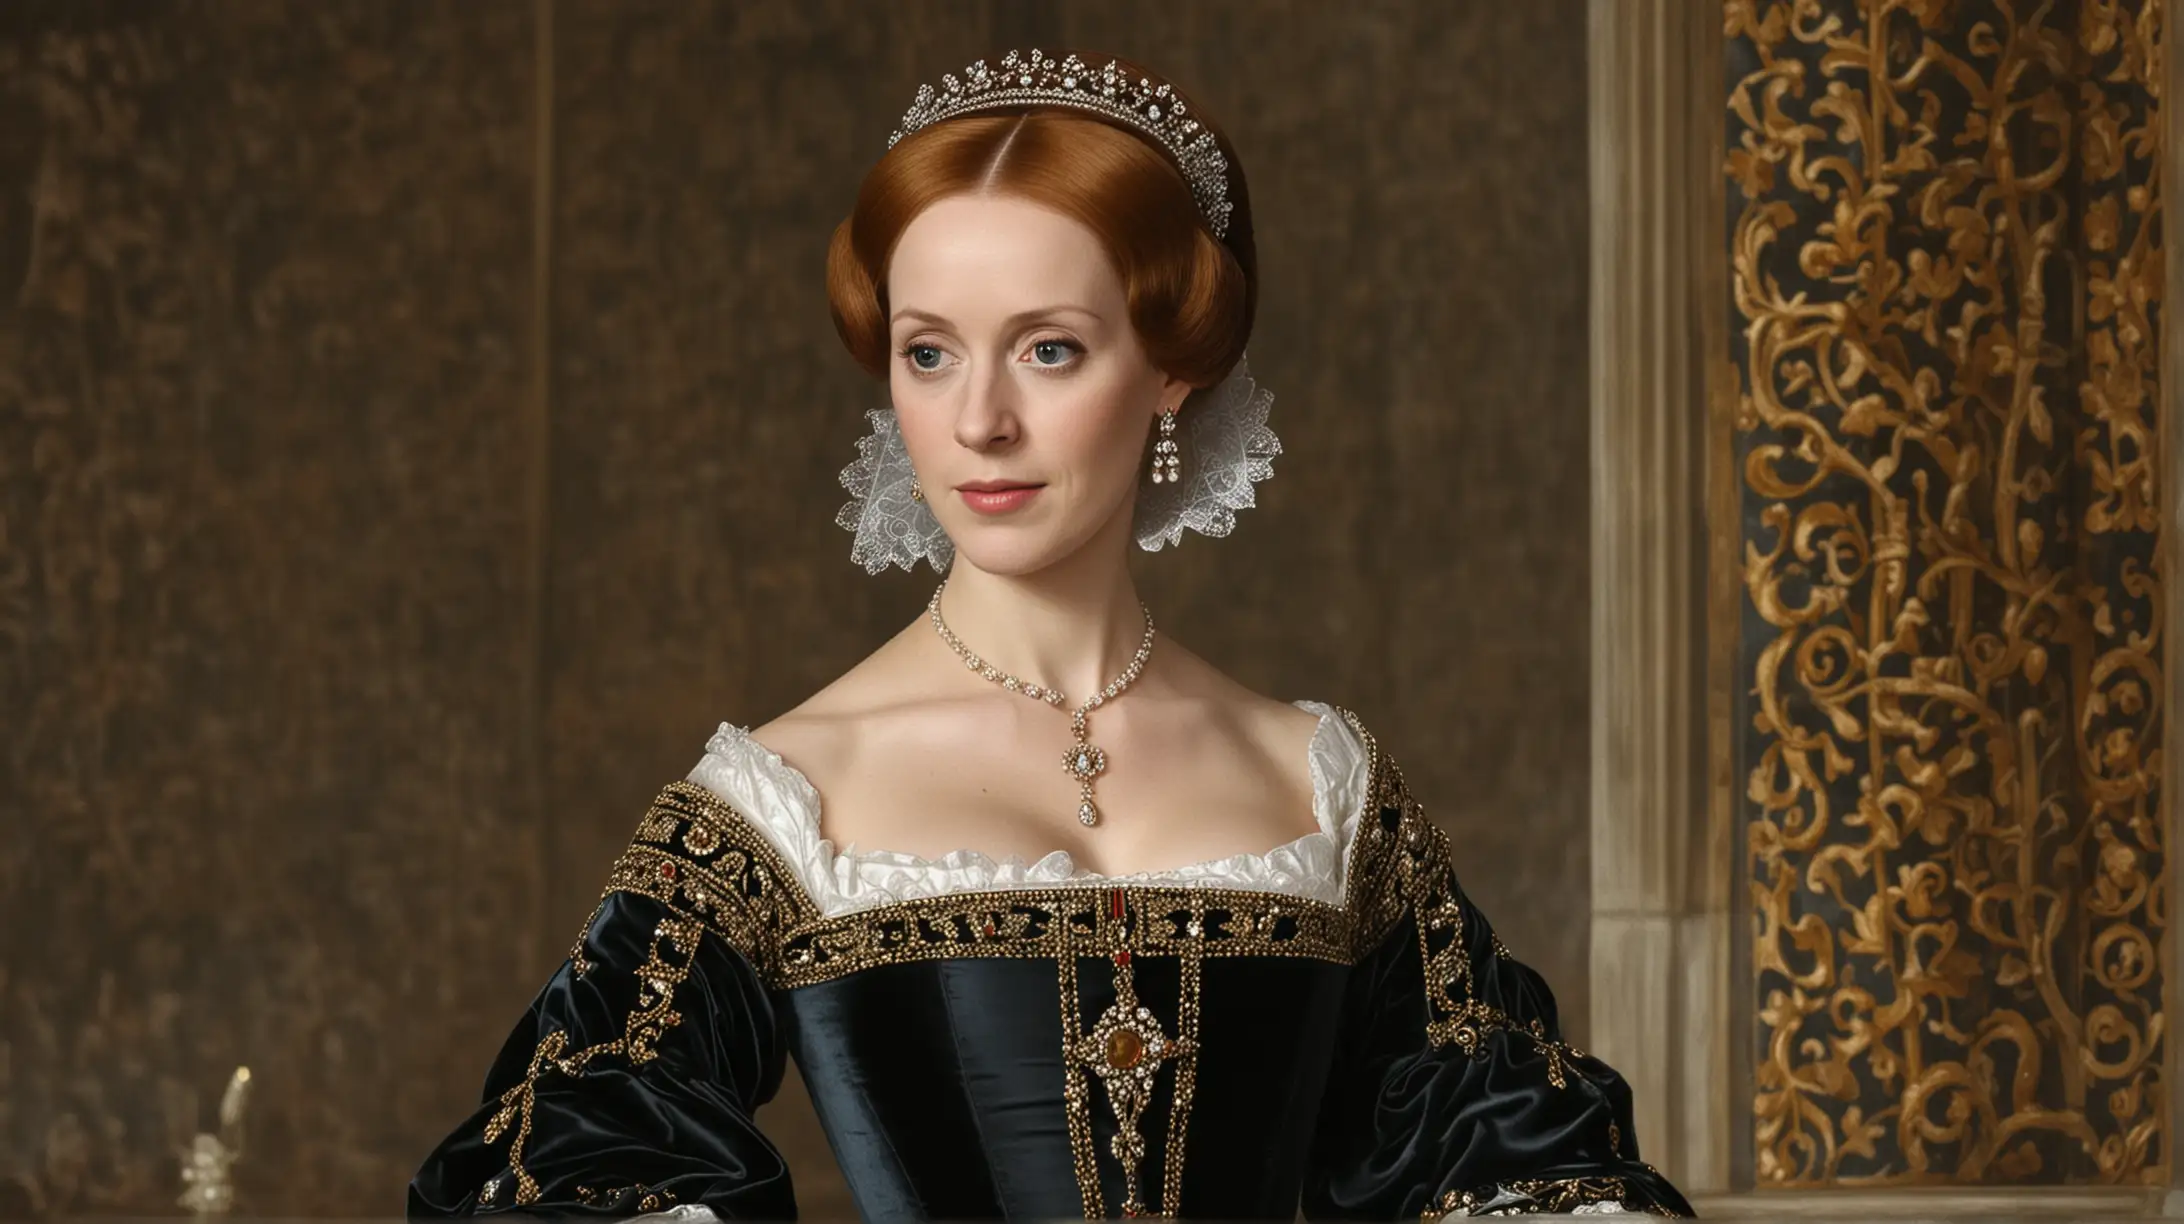 dame una imagen realista de María I de Inglaterra sus padres en conflictos matrimoniales